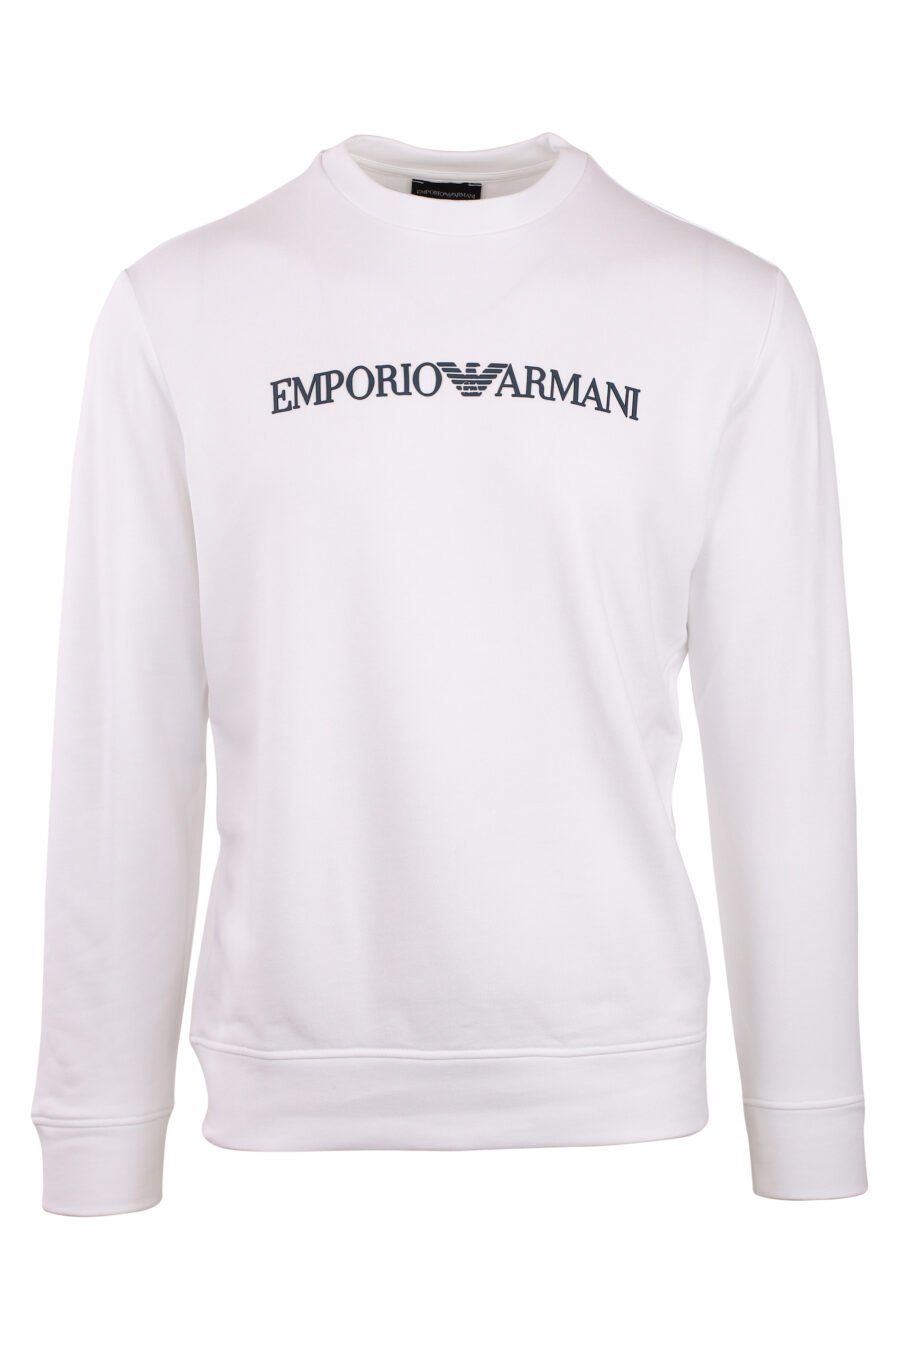 Weißes Sweatshirt mit schwarzem Schriftzug - IMG 0817